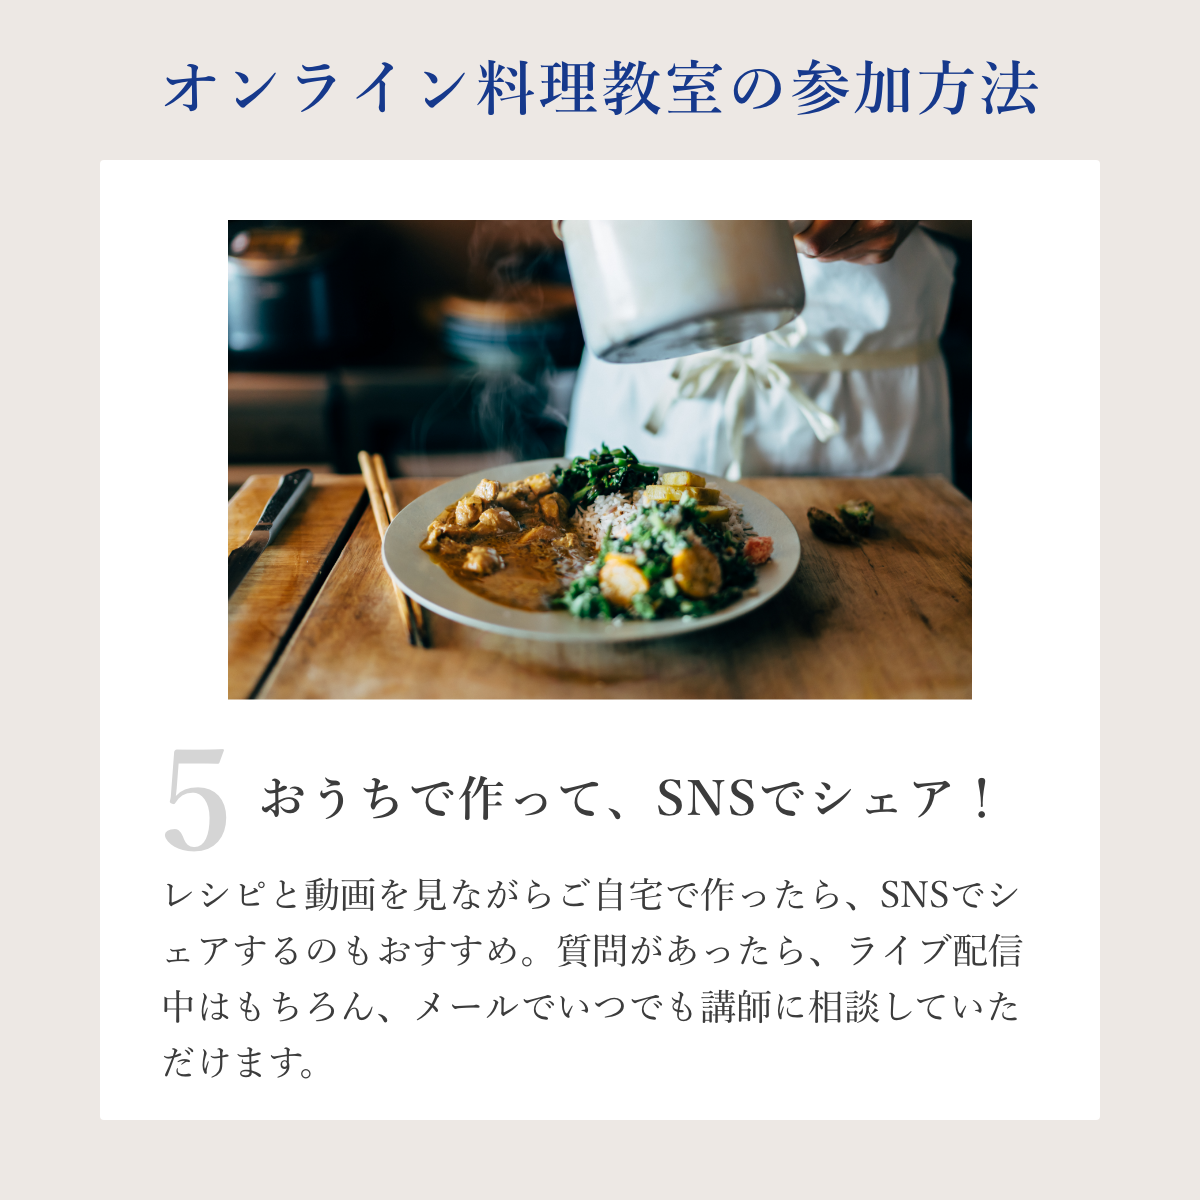 オンラインコミュニティ入会ページ(アーユルヴェーダ季節の料理教室コース)